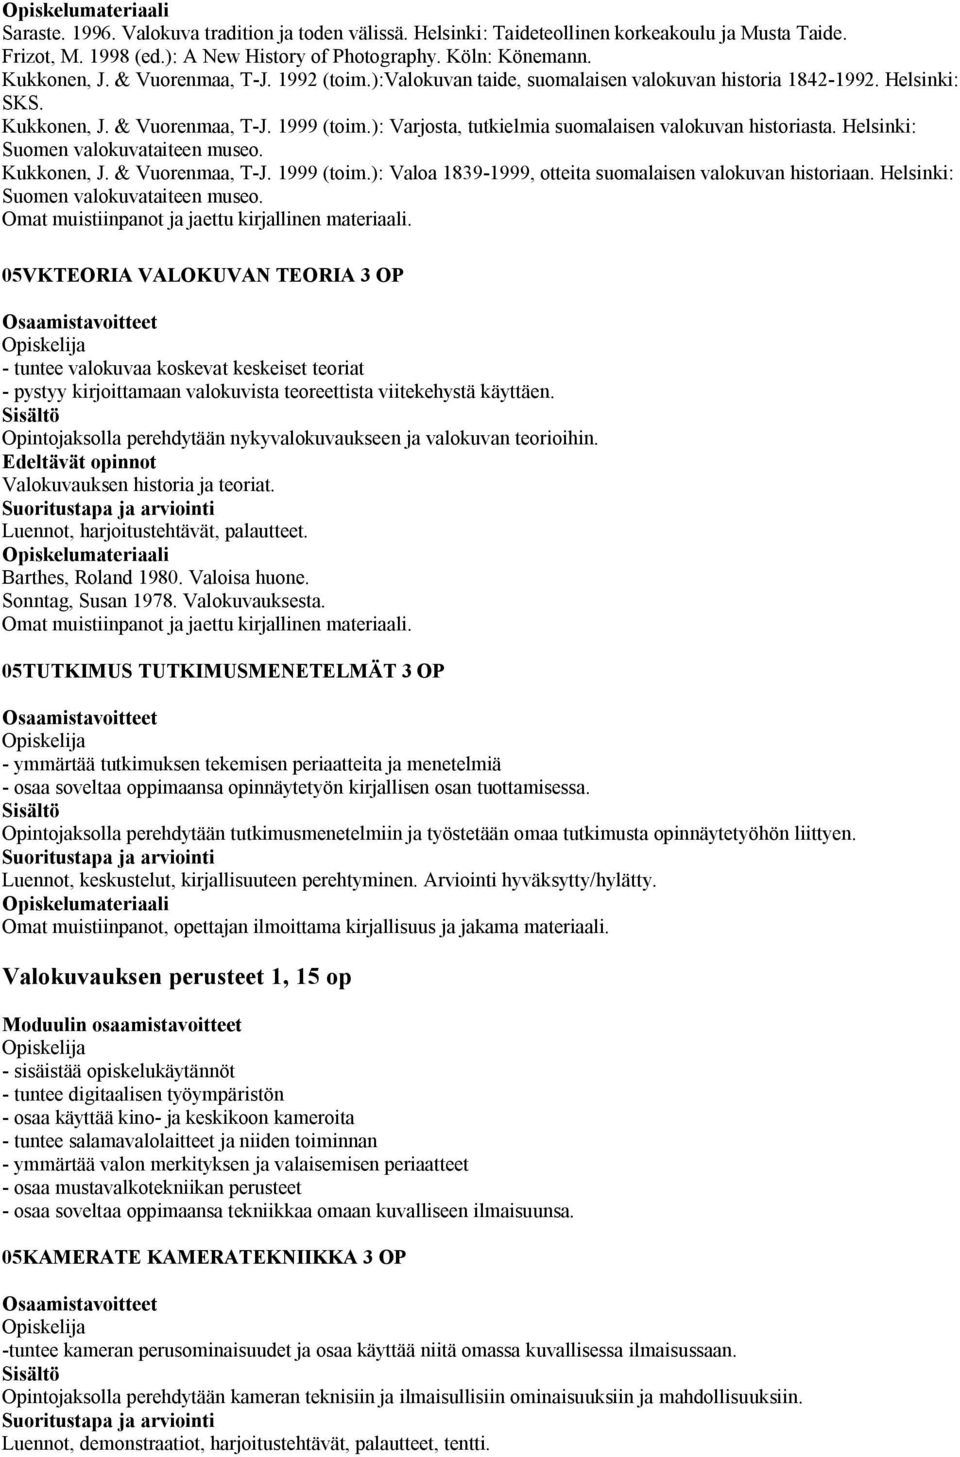 ): Varjosta, tutkielmia suomalaisen valokuvan historiasta. Helsinki: Suomen valokuvataiteen museo. Kukkonen, J. & Vuorenmaa, T-J. 1999 (toim.